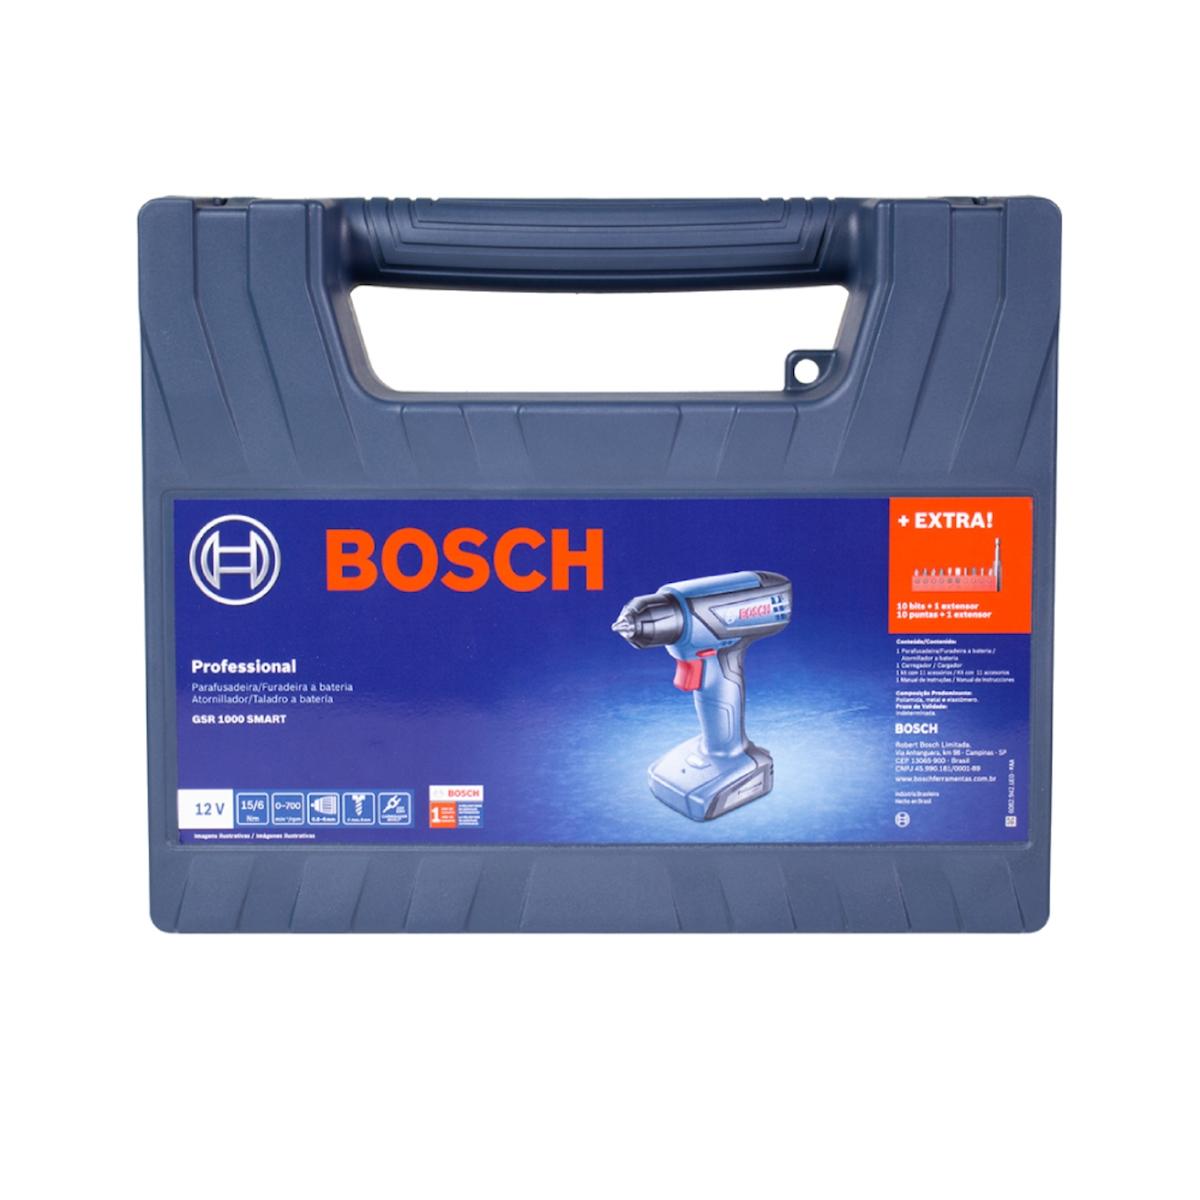  Bosch PS11-102 12-Volt kit de taladro y desarmador derecho de  3/8 pulgada con 1 batería de iones de litio de alta duración y cargador